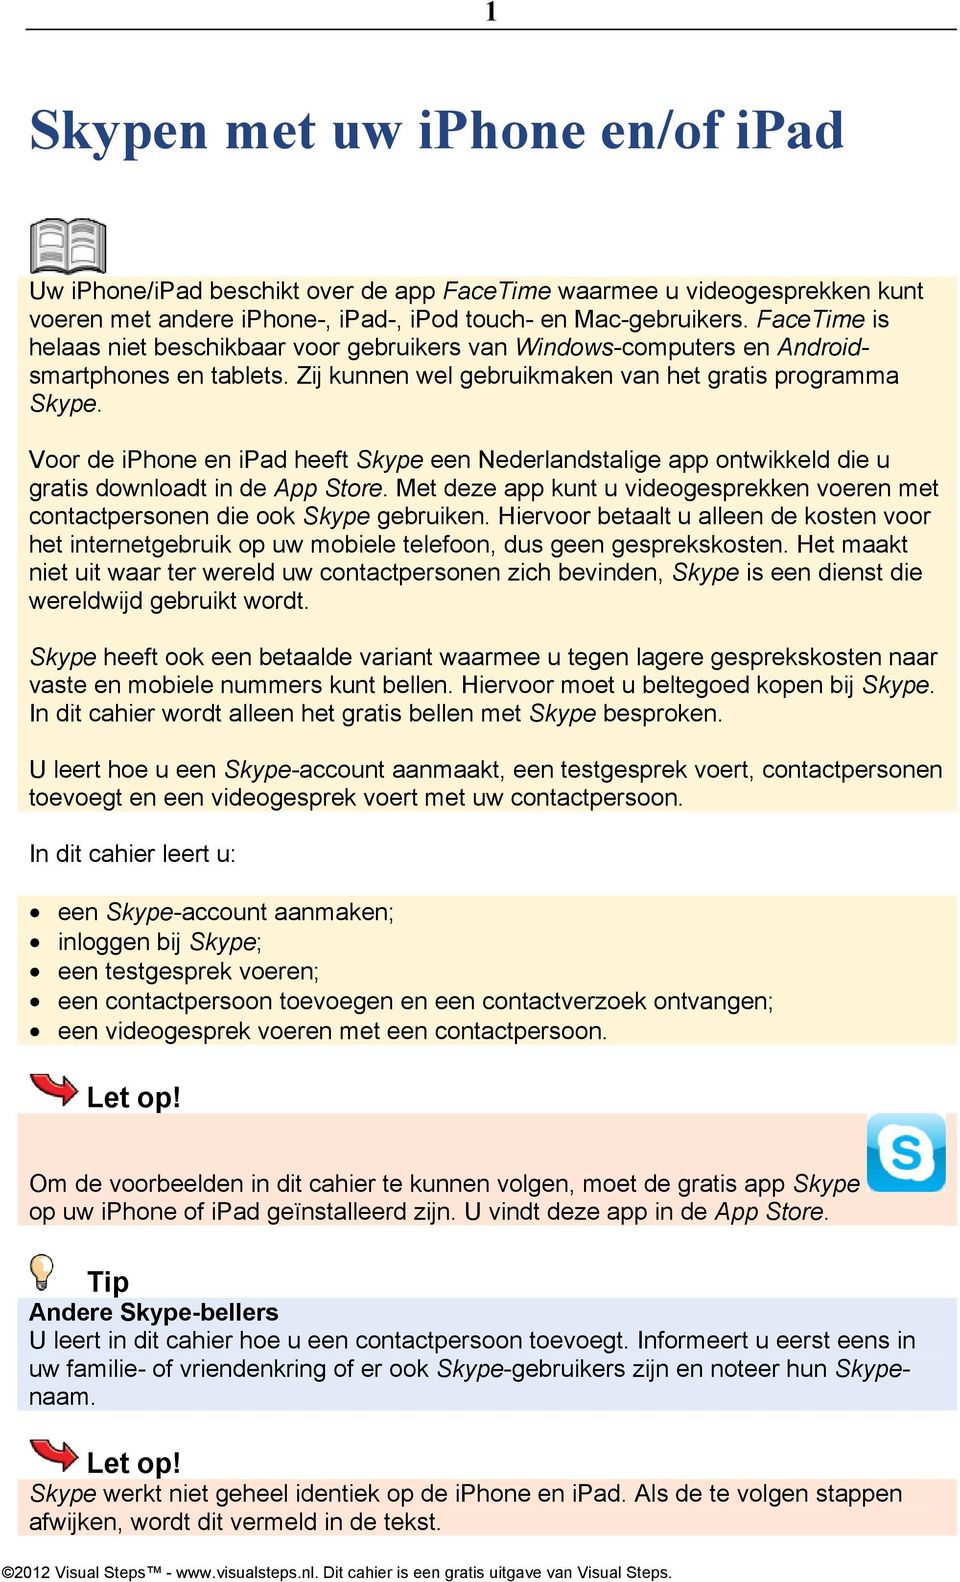 Voor de iphone en ipad heeft Skype een Nederlandstalige app ontwikkeld die u gratis downloadt in de App Store. Met deze app kunt u videogesprekken voeren met contactpersonen die ook Skype gebruiken.